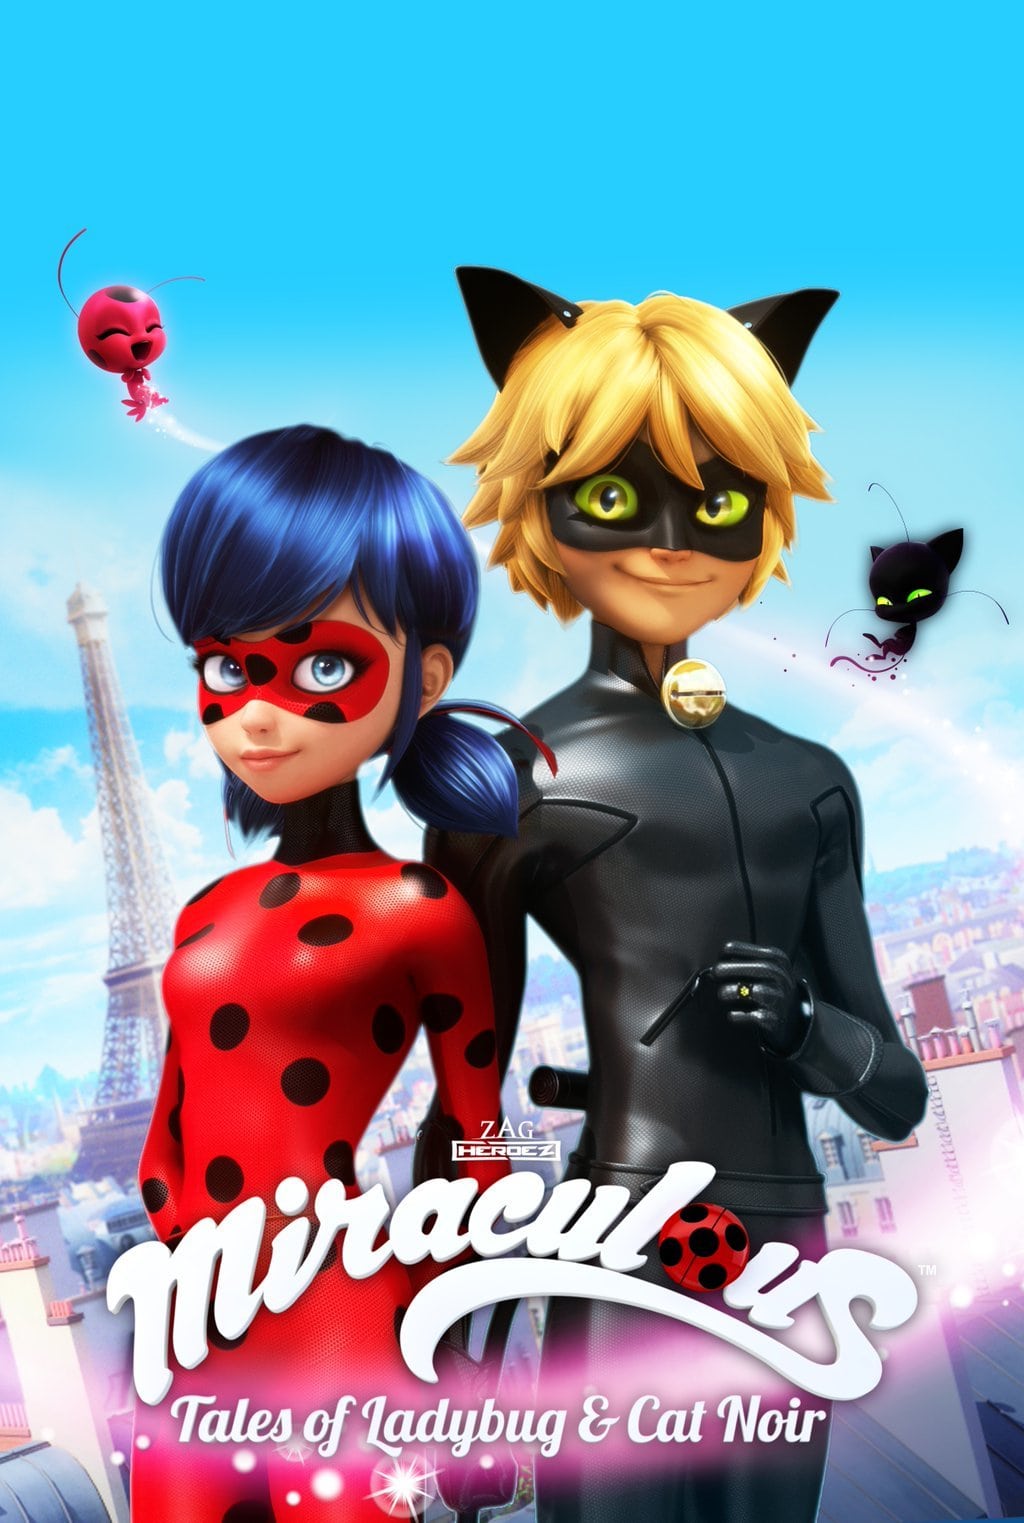 Miraculous as Aventuras de Ladybug ep 1 anime 